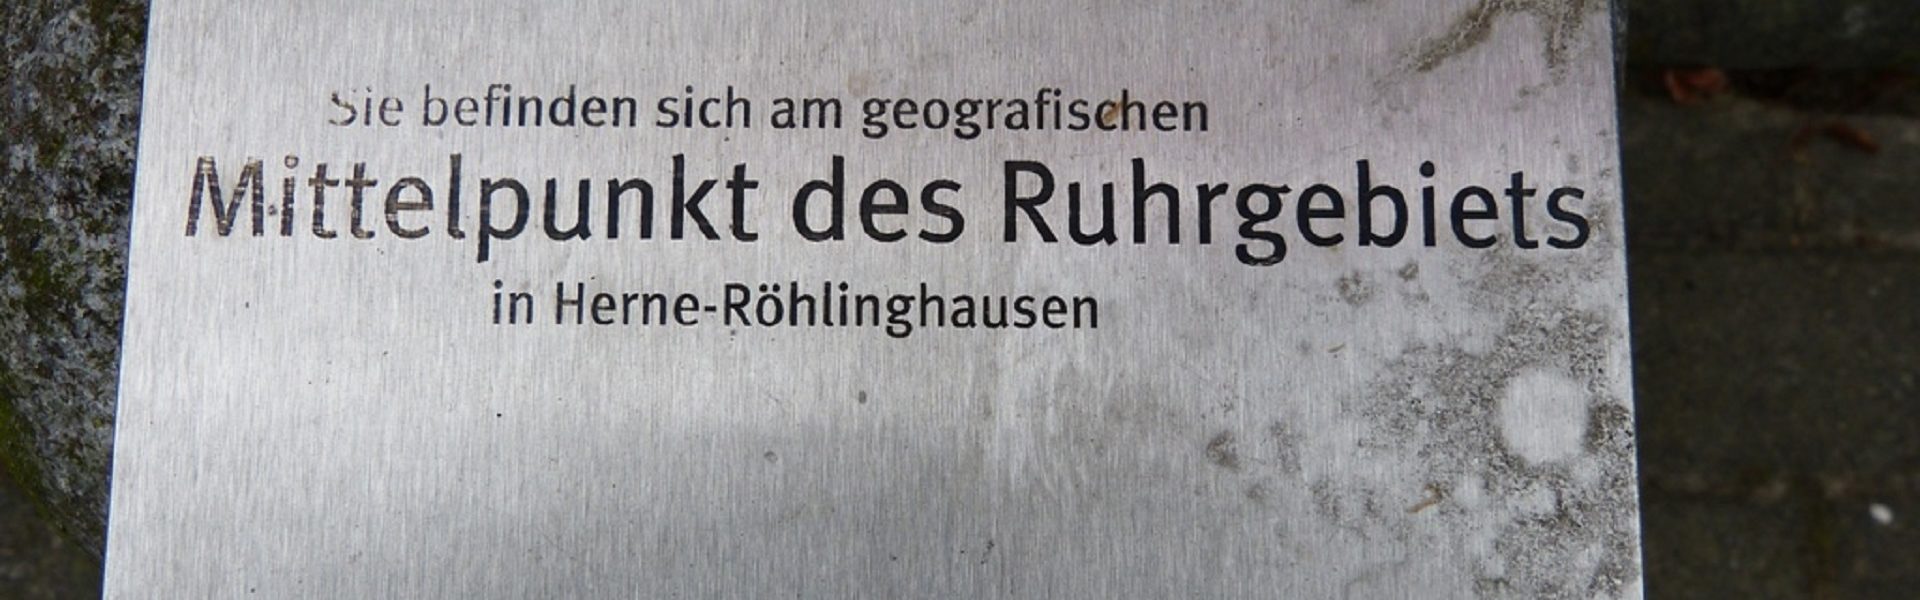 Tafel Mittelpunkt des Ruhrgebiets